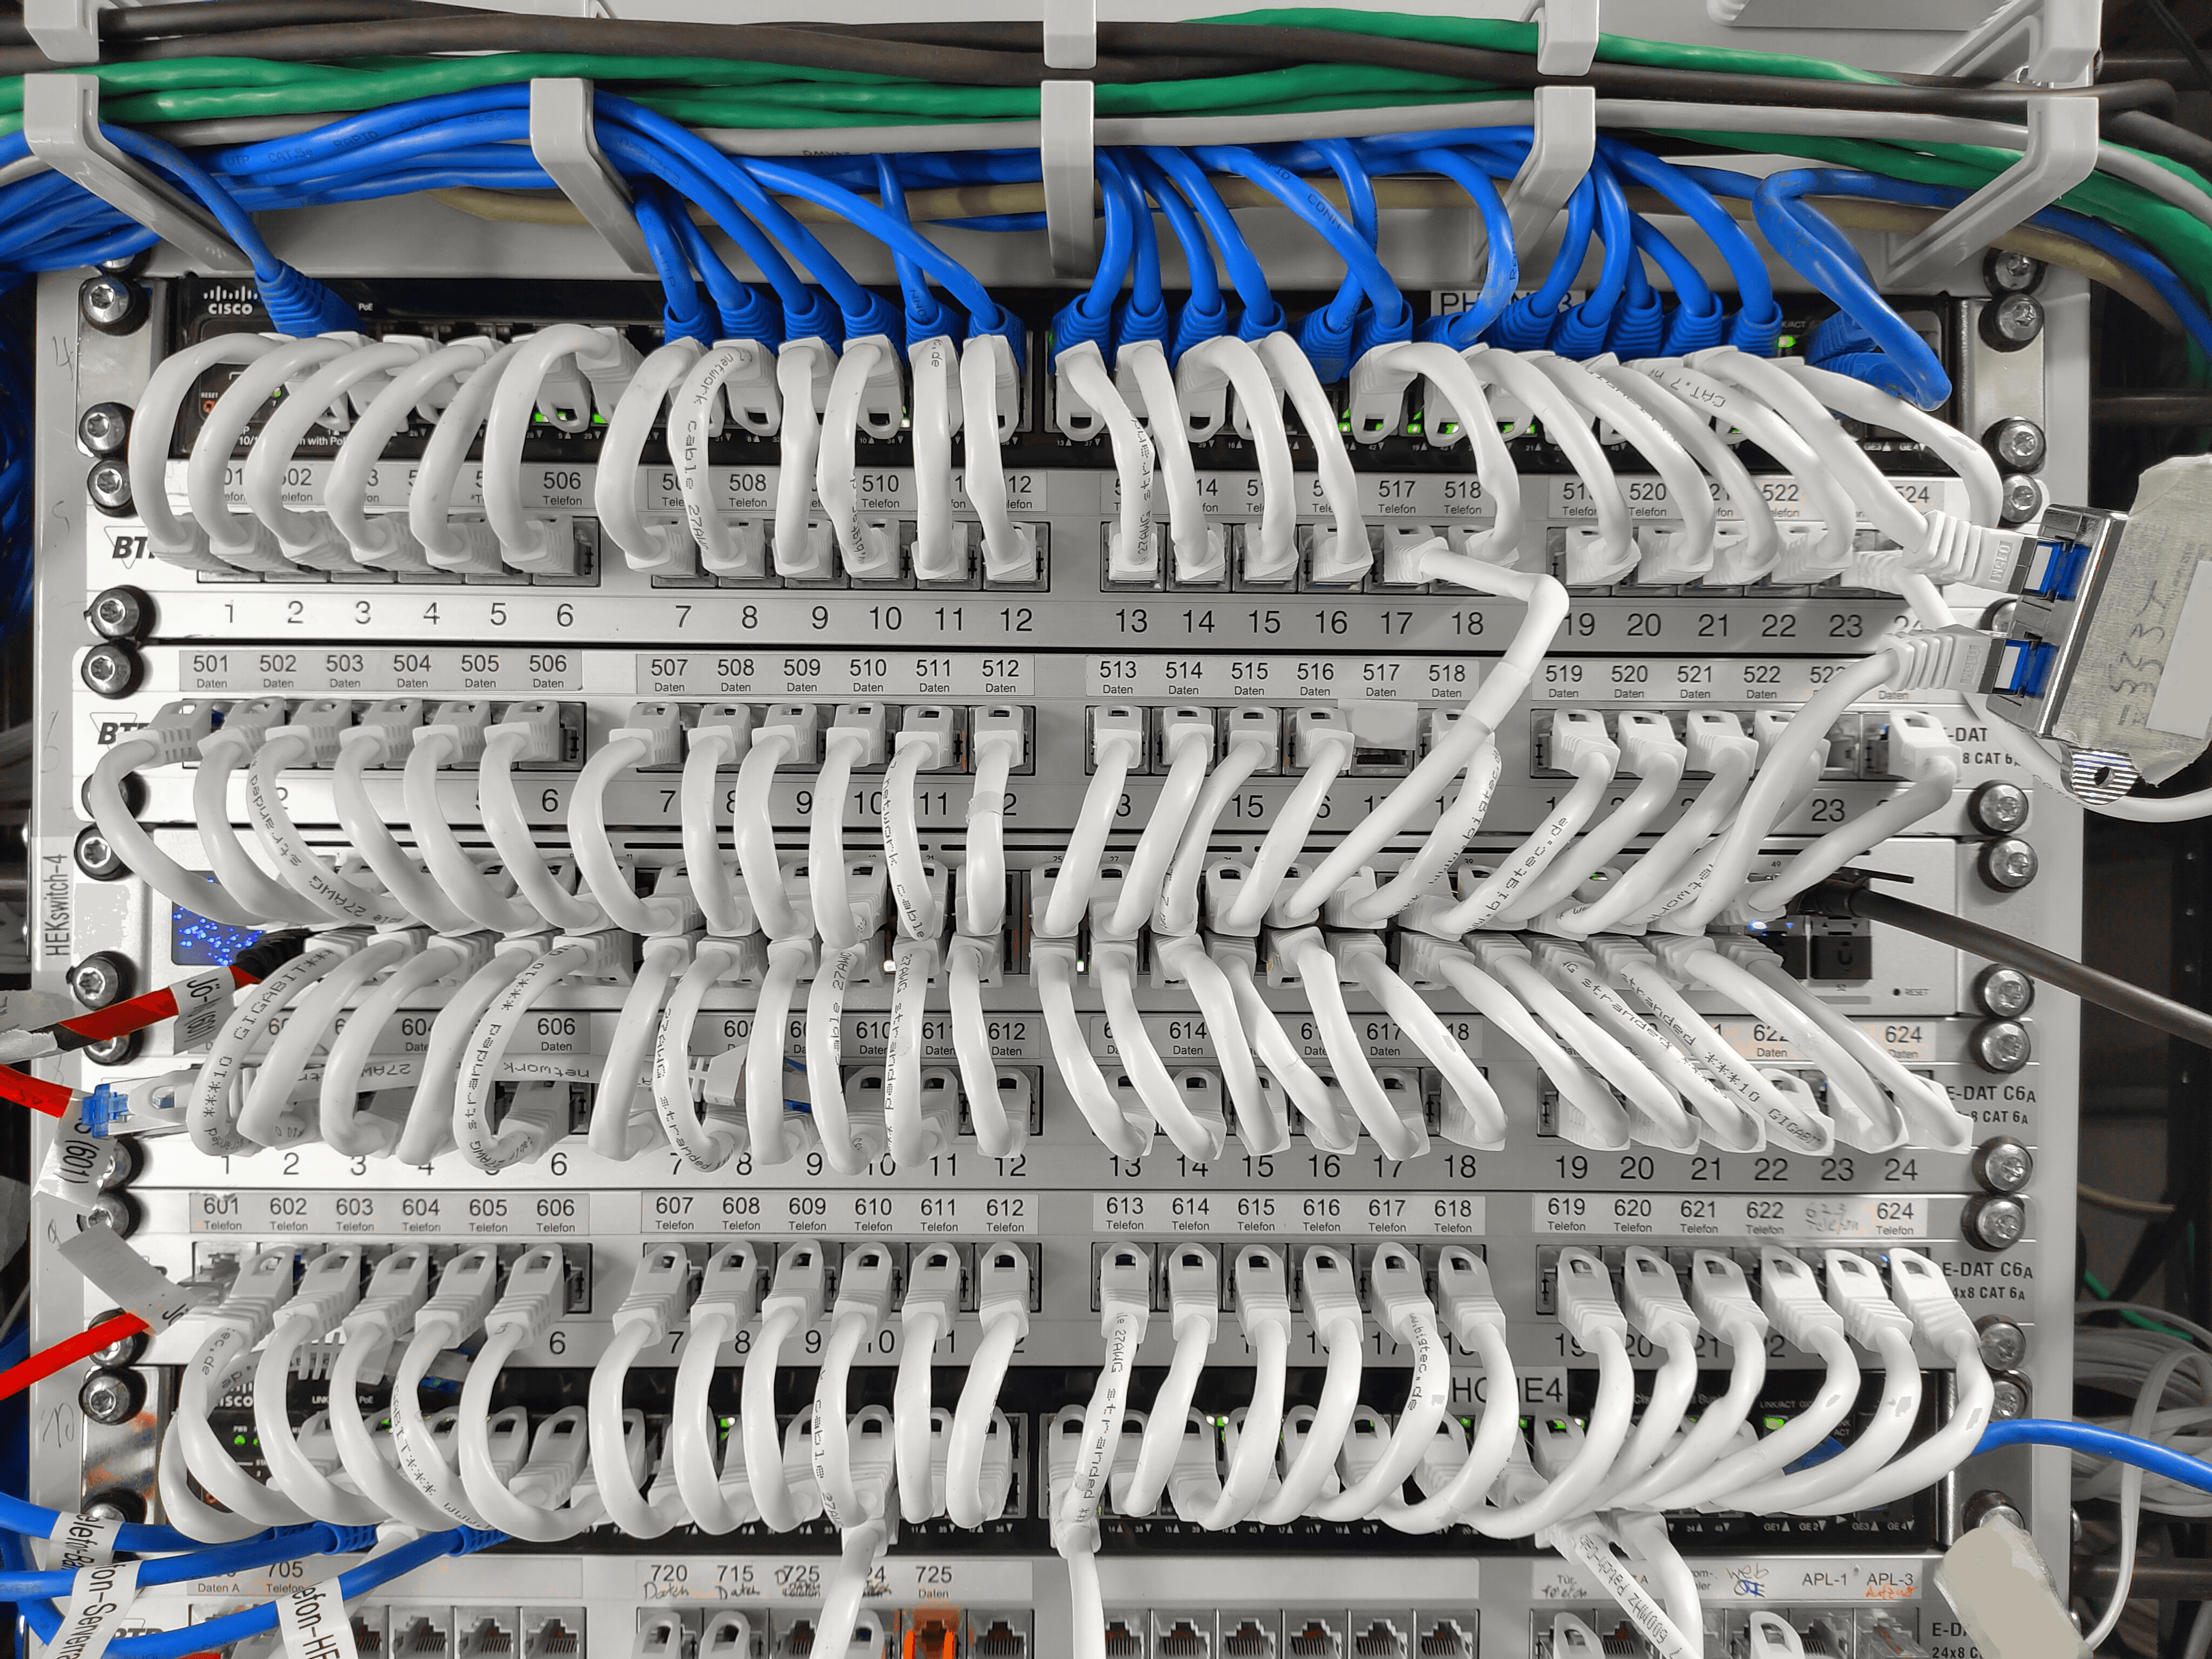 Ein Netzwerk-Switch mit vielen LAN-Kabeln in einem Serverraum